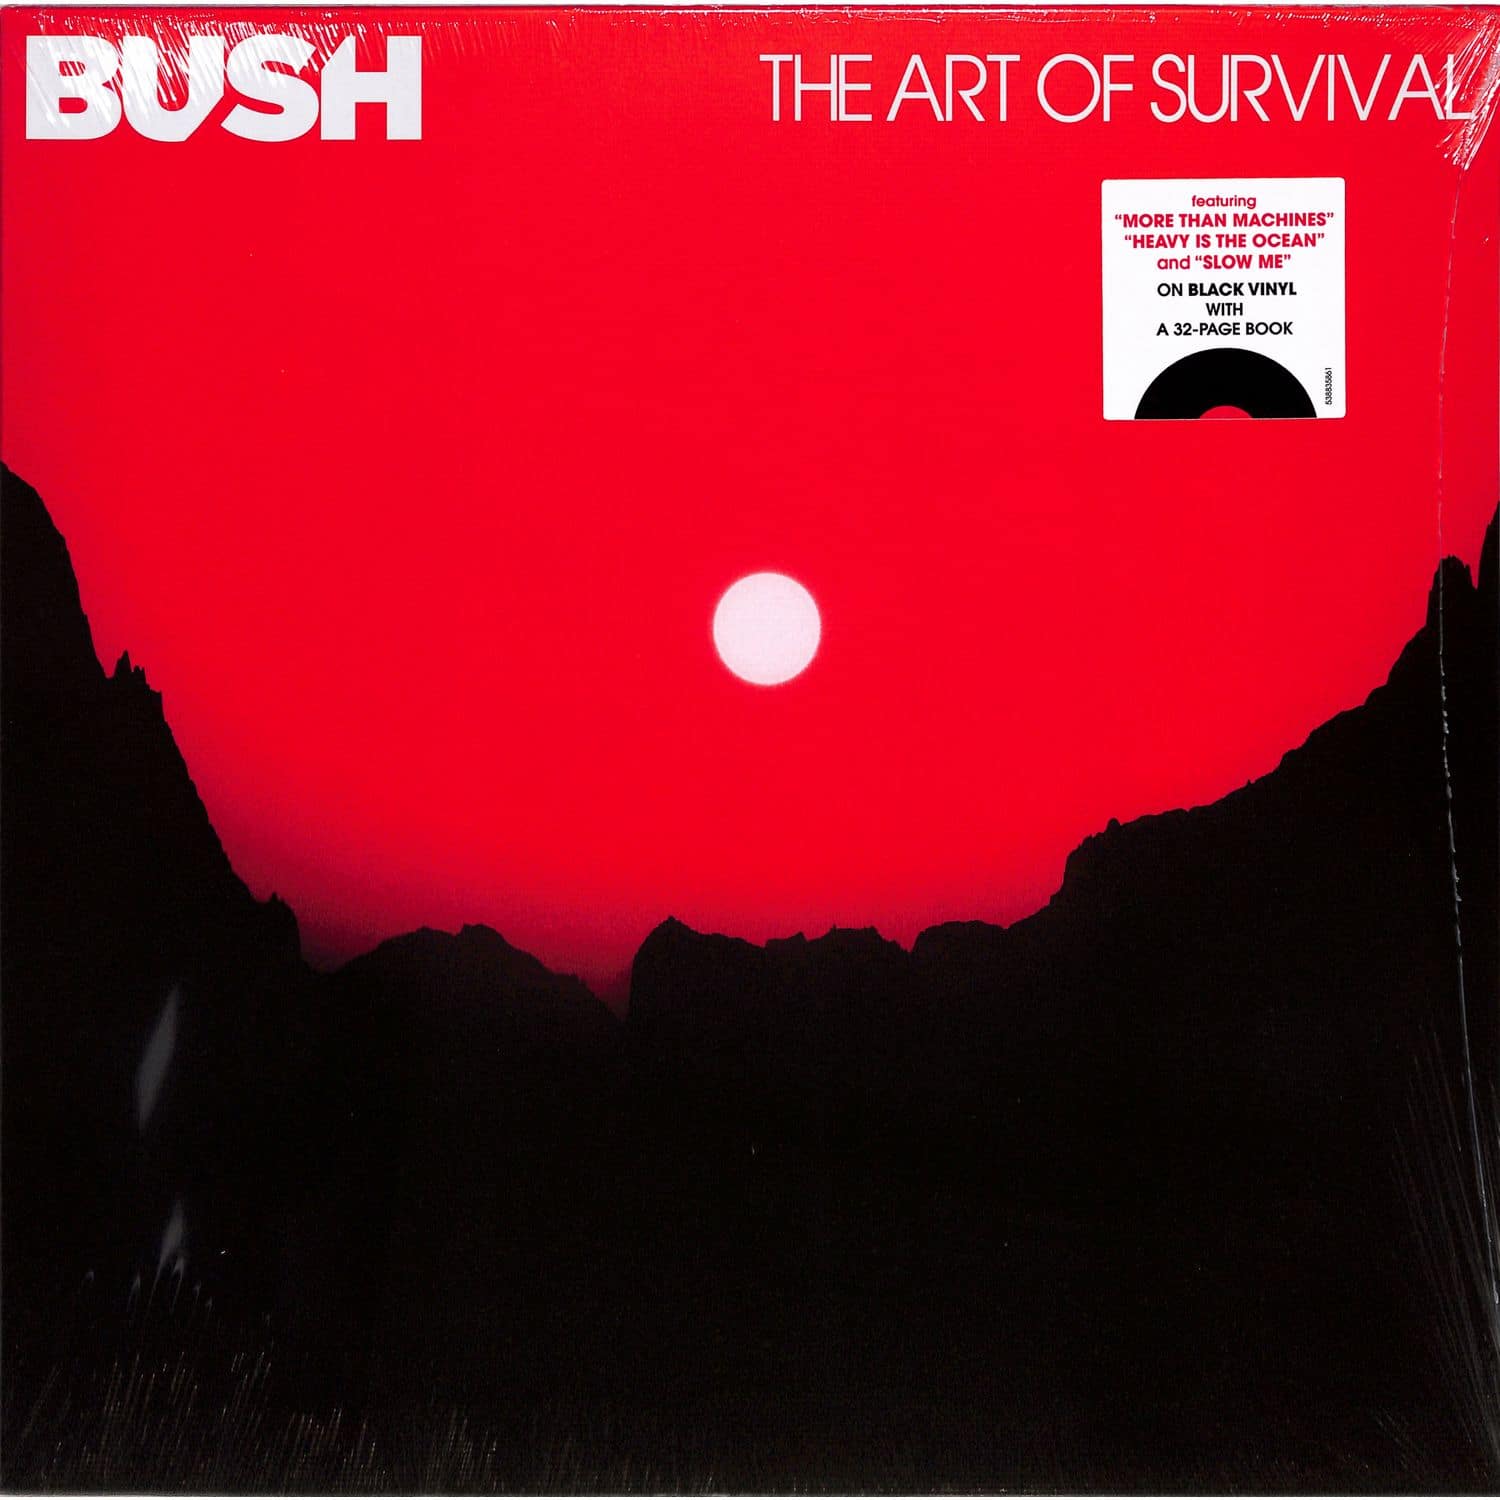 Bush - THE ART OF SURVIVAL 